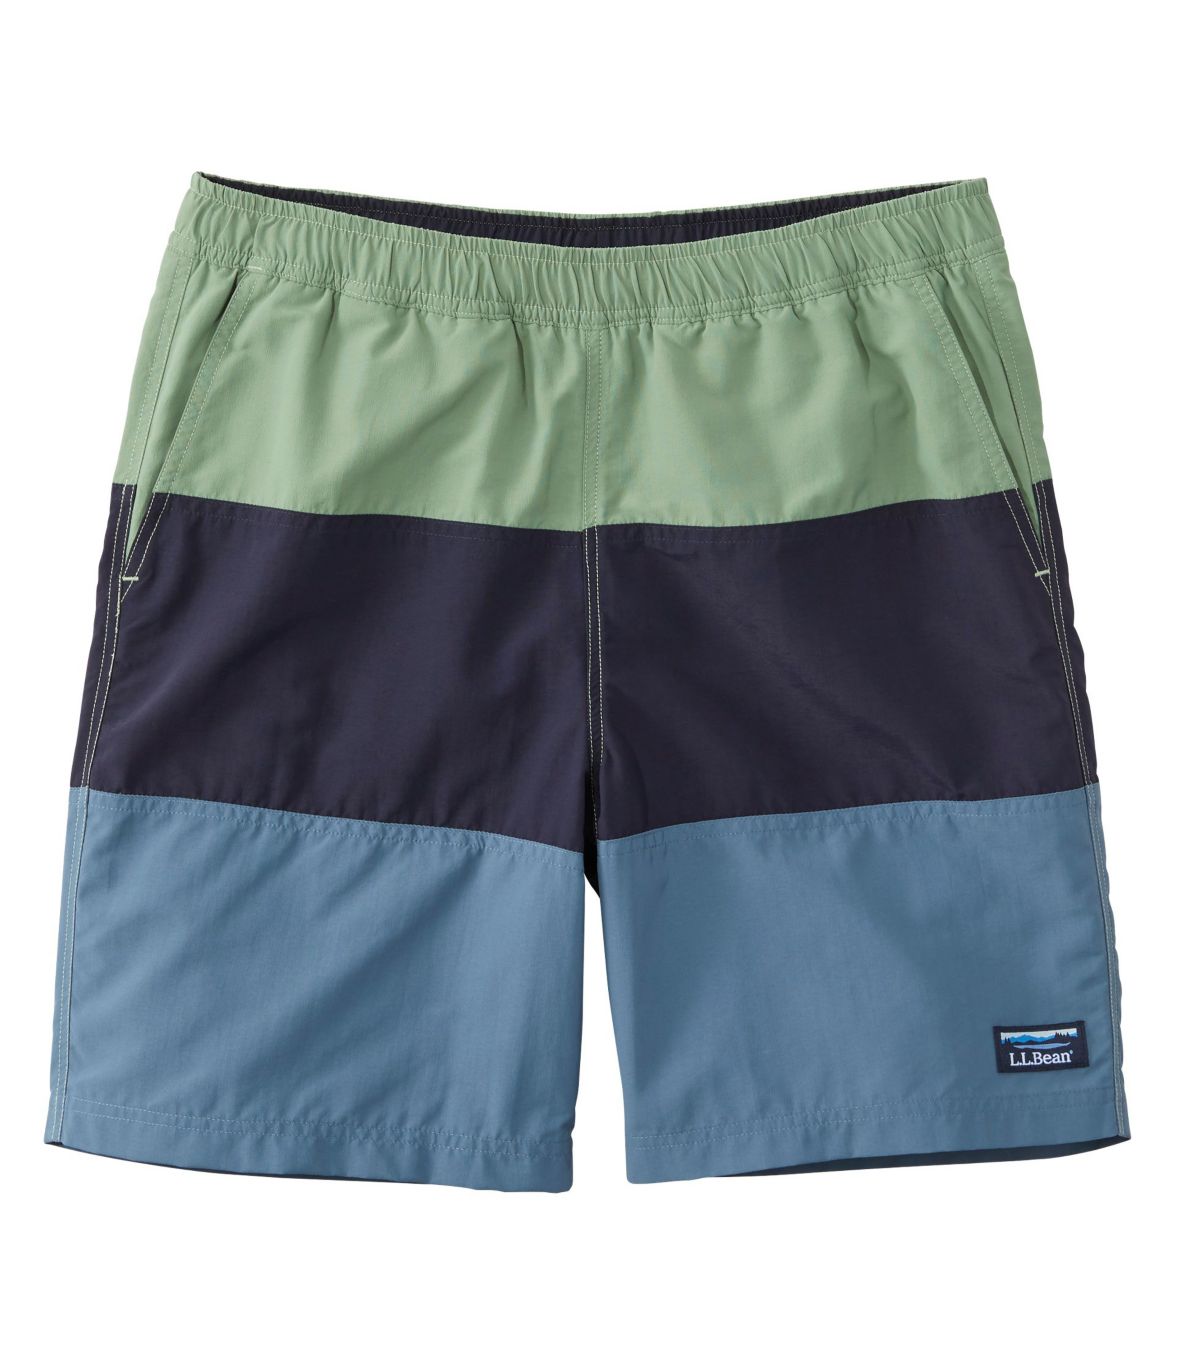 Men's Classic Supplex Sport Shorts, 8" Colorblock